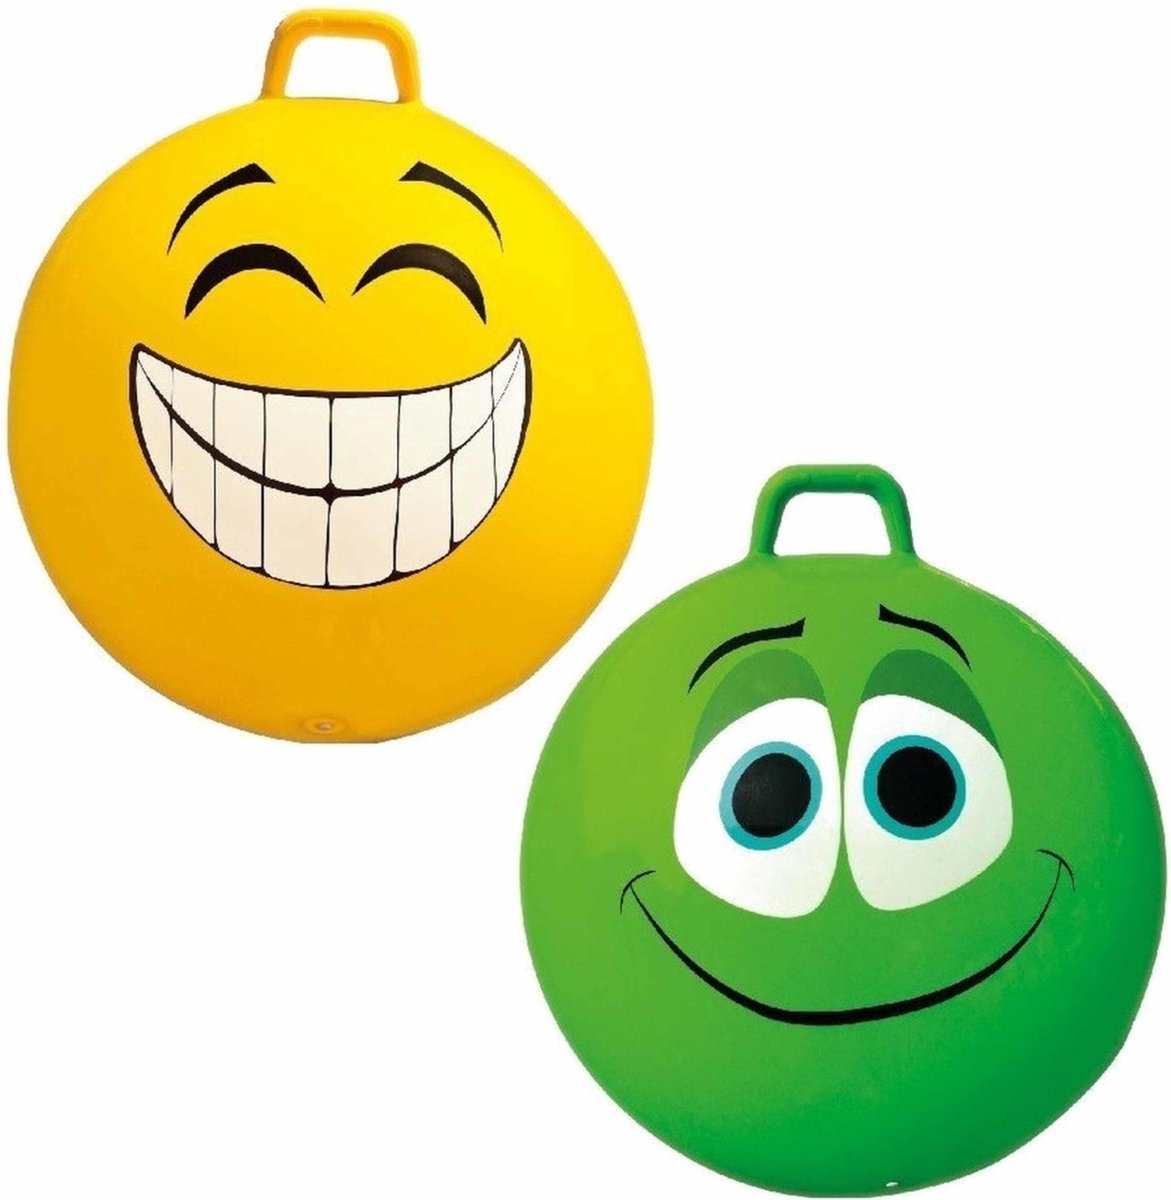 2x stuks speelgoed Skippyballen met funny faces gezicht geel en groen 65 cm Buitenspeelgoed